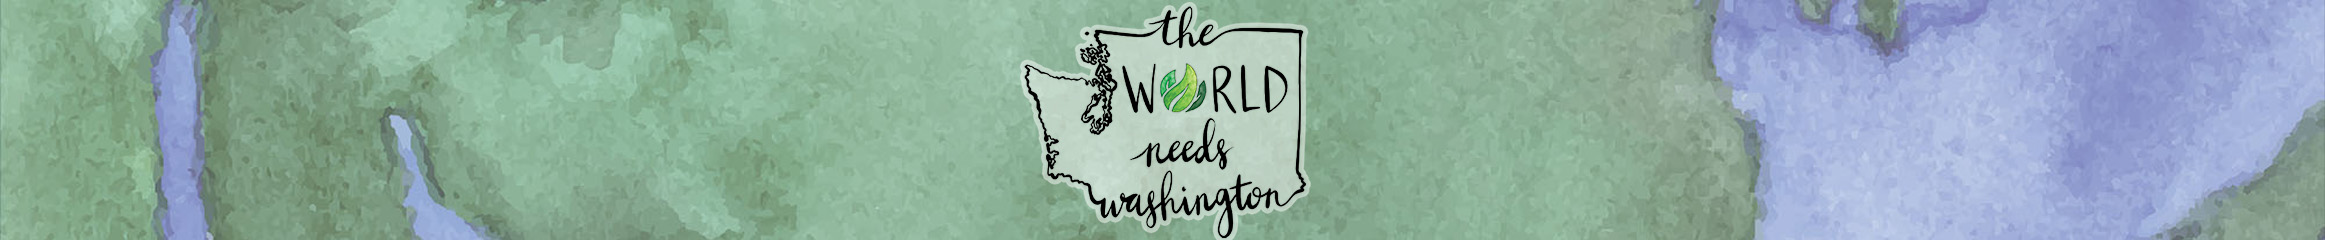 The World Needs Washington